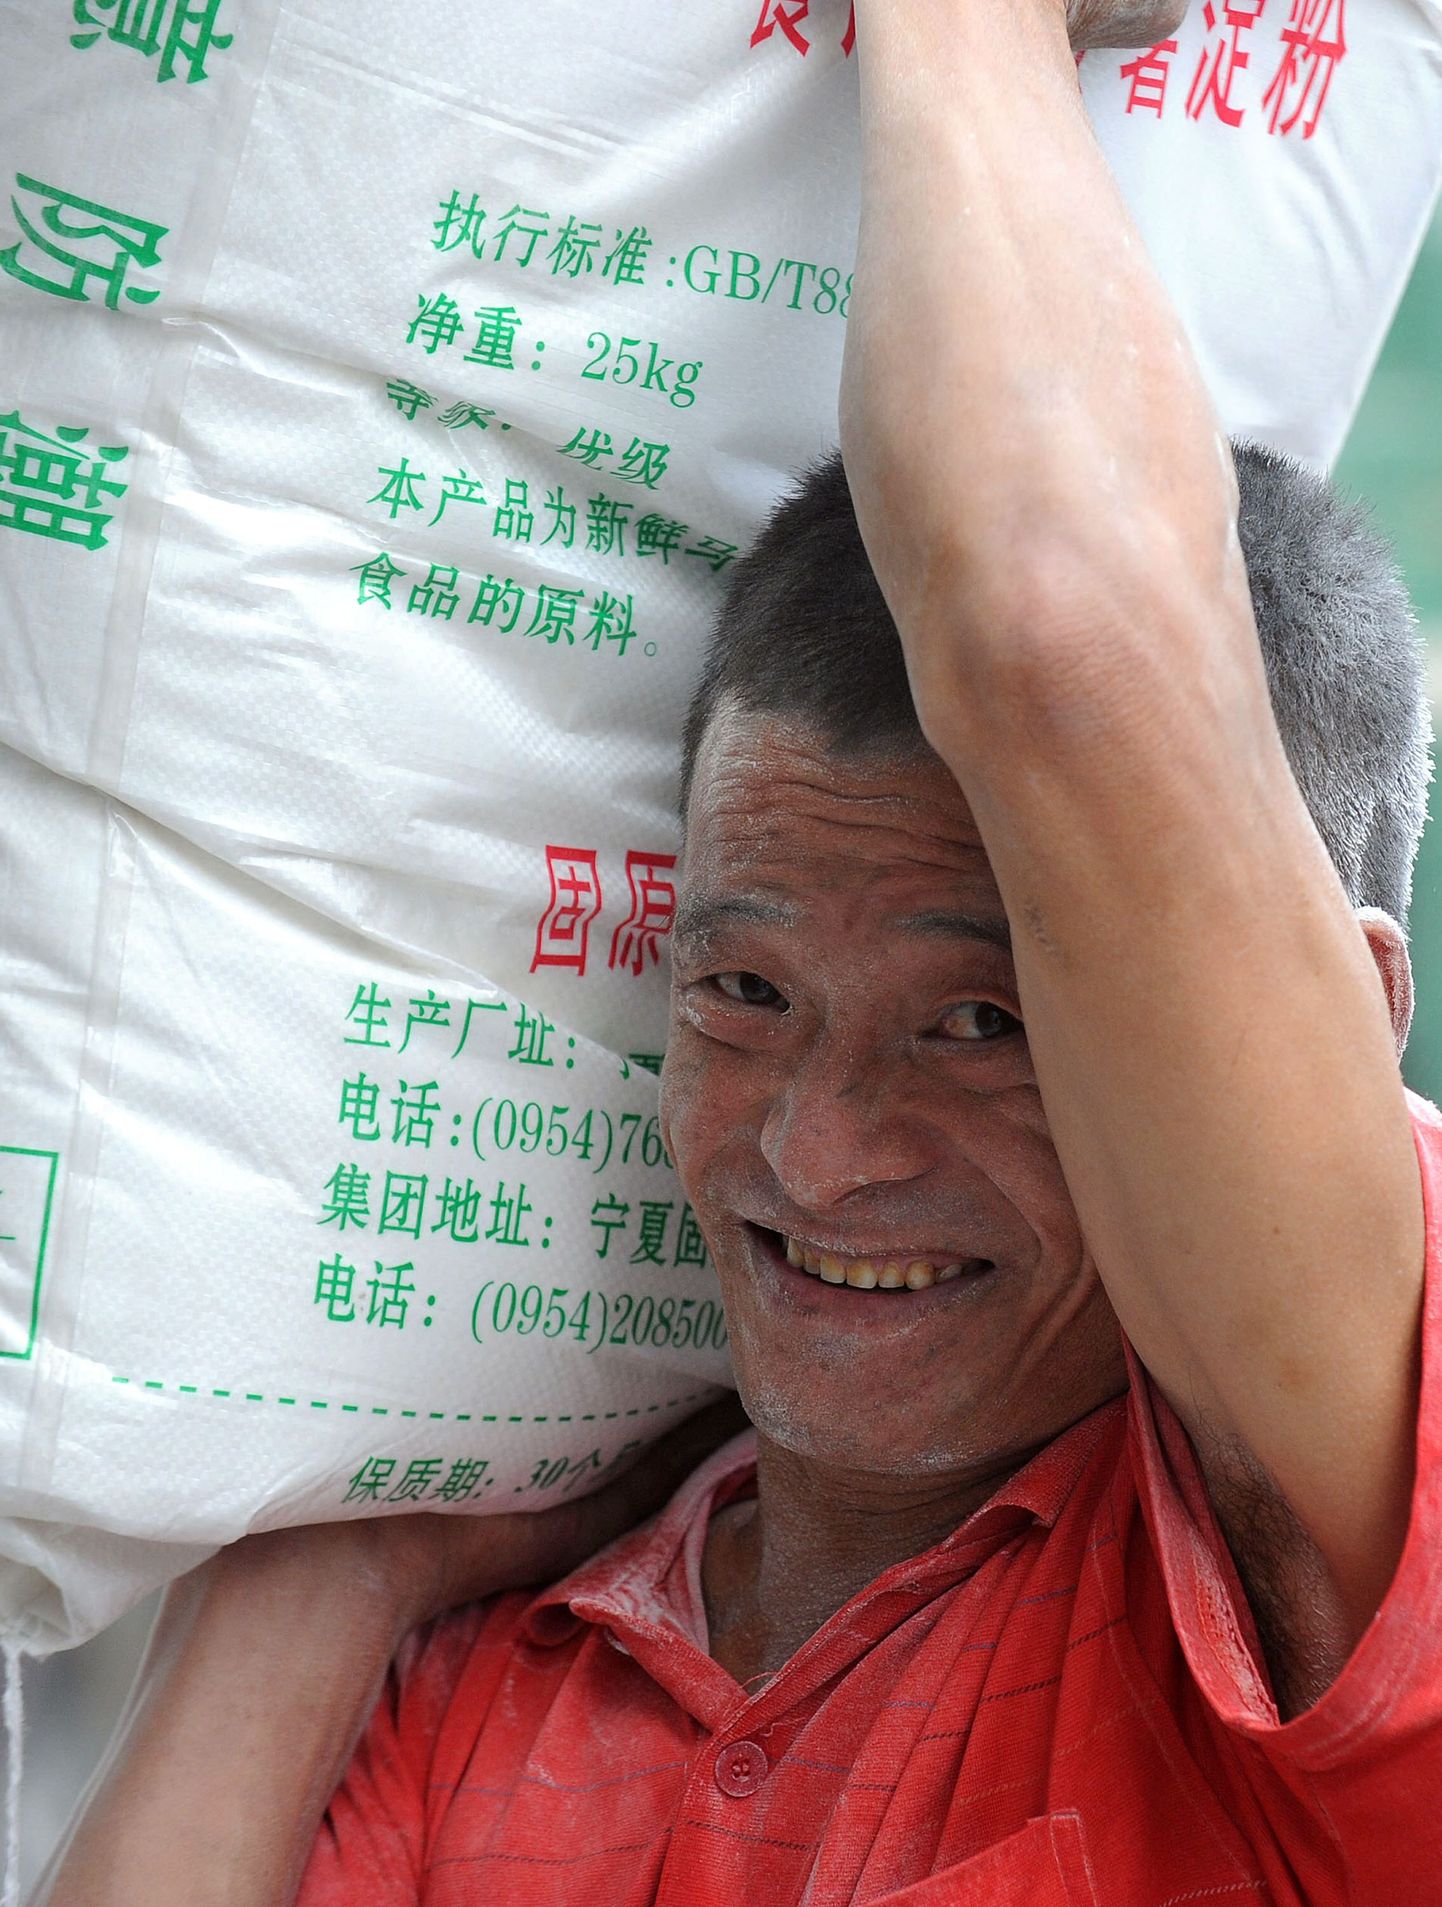 Hiina tööline tassimas jahukotti. Melamiini on leitud ka jahust, mida eksporditi Kõrgõzstani.